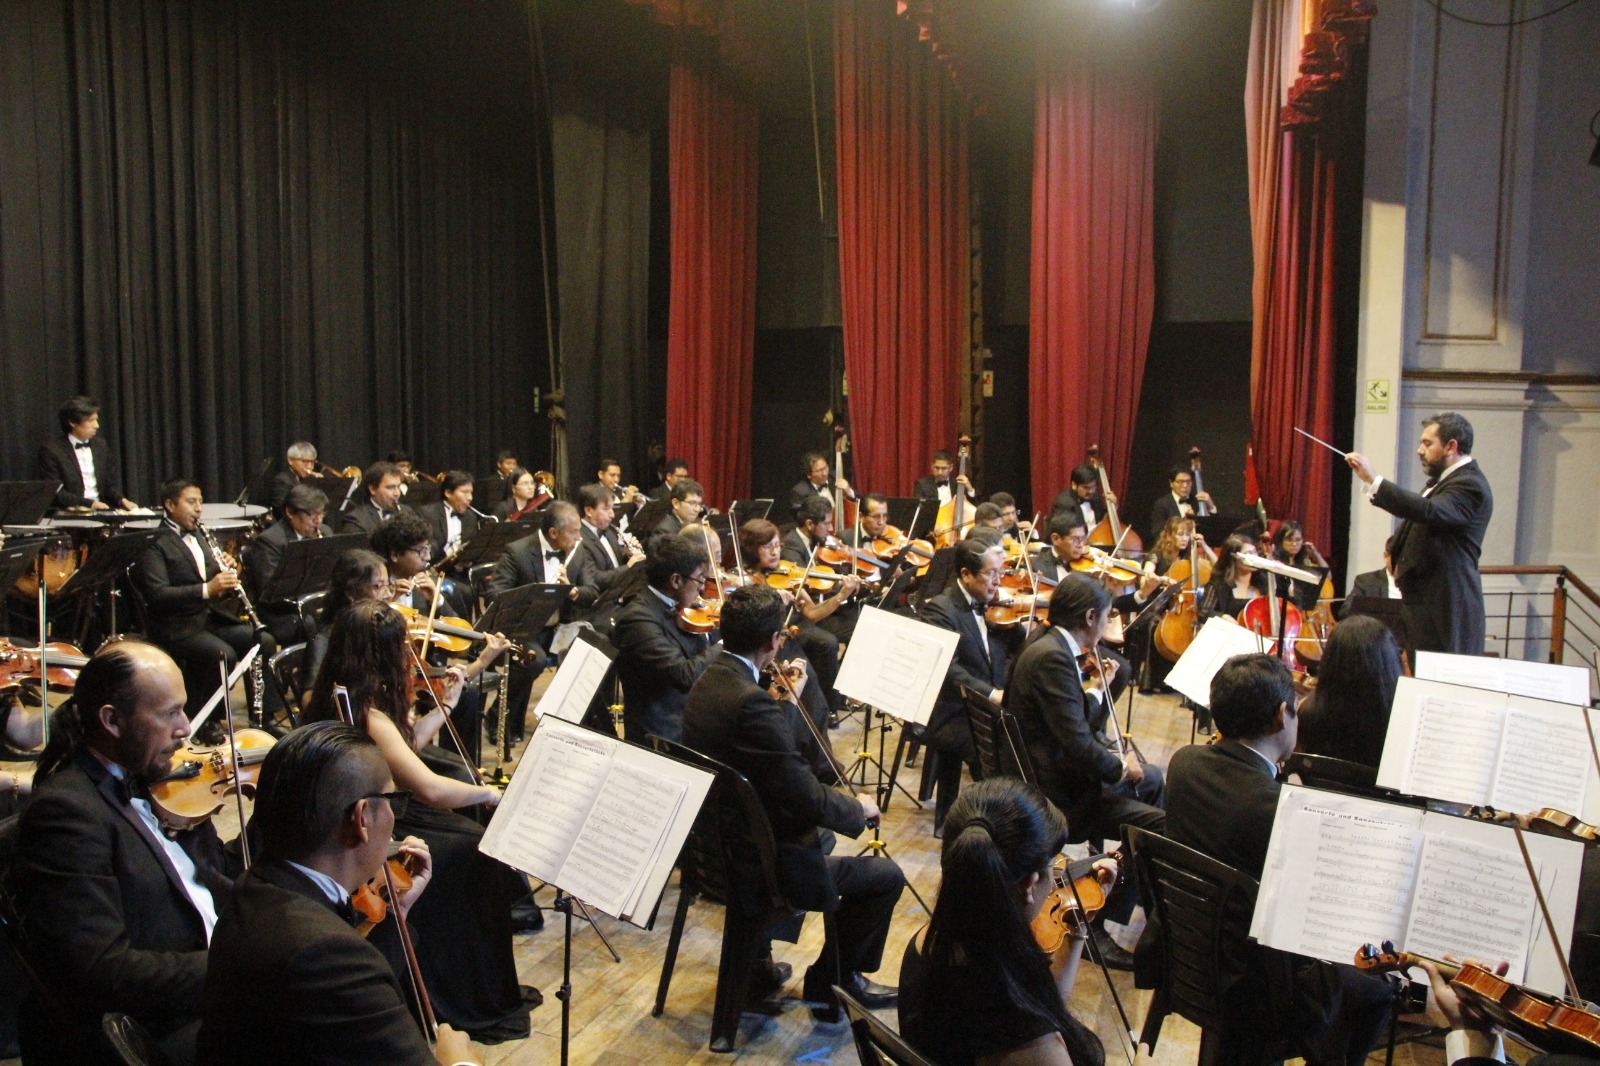 Este viernes 07 de julio la Orquesta Sinfónica de Arequipa presentará el concierto Iwasaki & Gervasoni en el Teatro Municipal